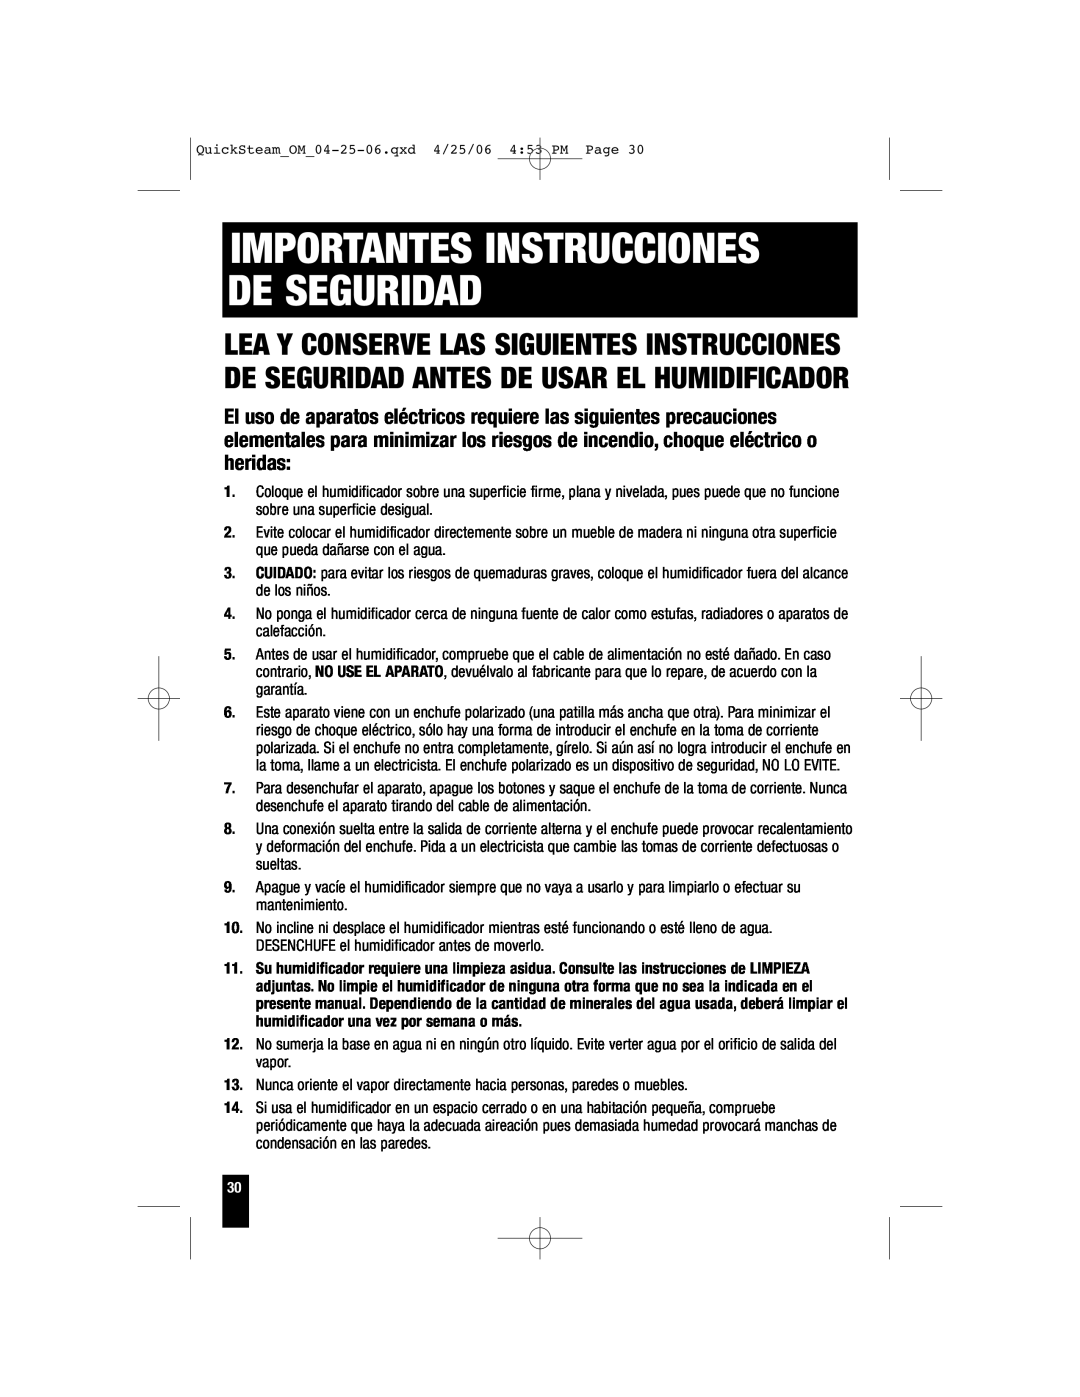 Honeywell HWM-330, HWM-450, HWM-335, HWM-331 owner manual Importantes Instrucciones De Seguridad 